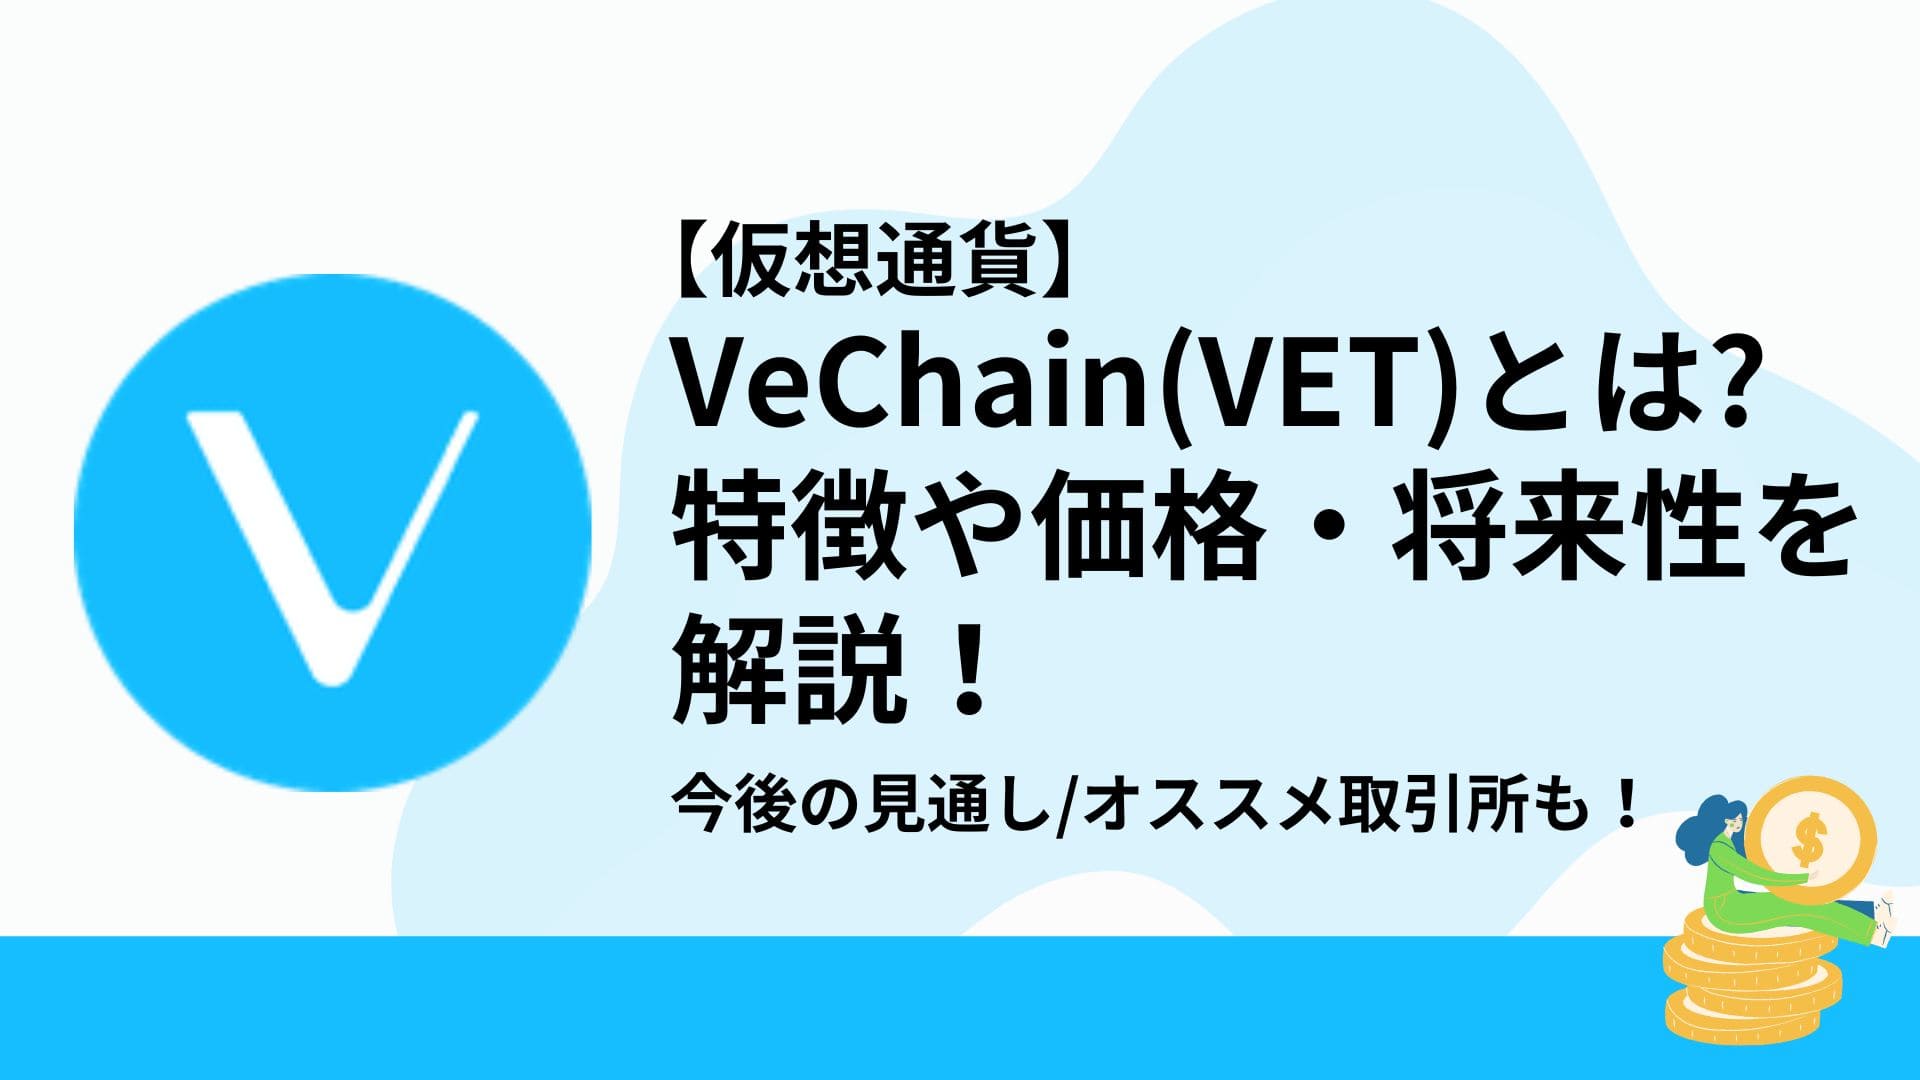 Vechain(VET)_仮想通貨_アイキャッチ